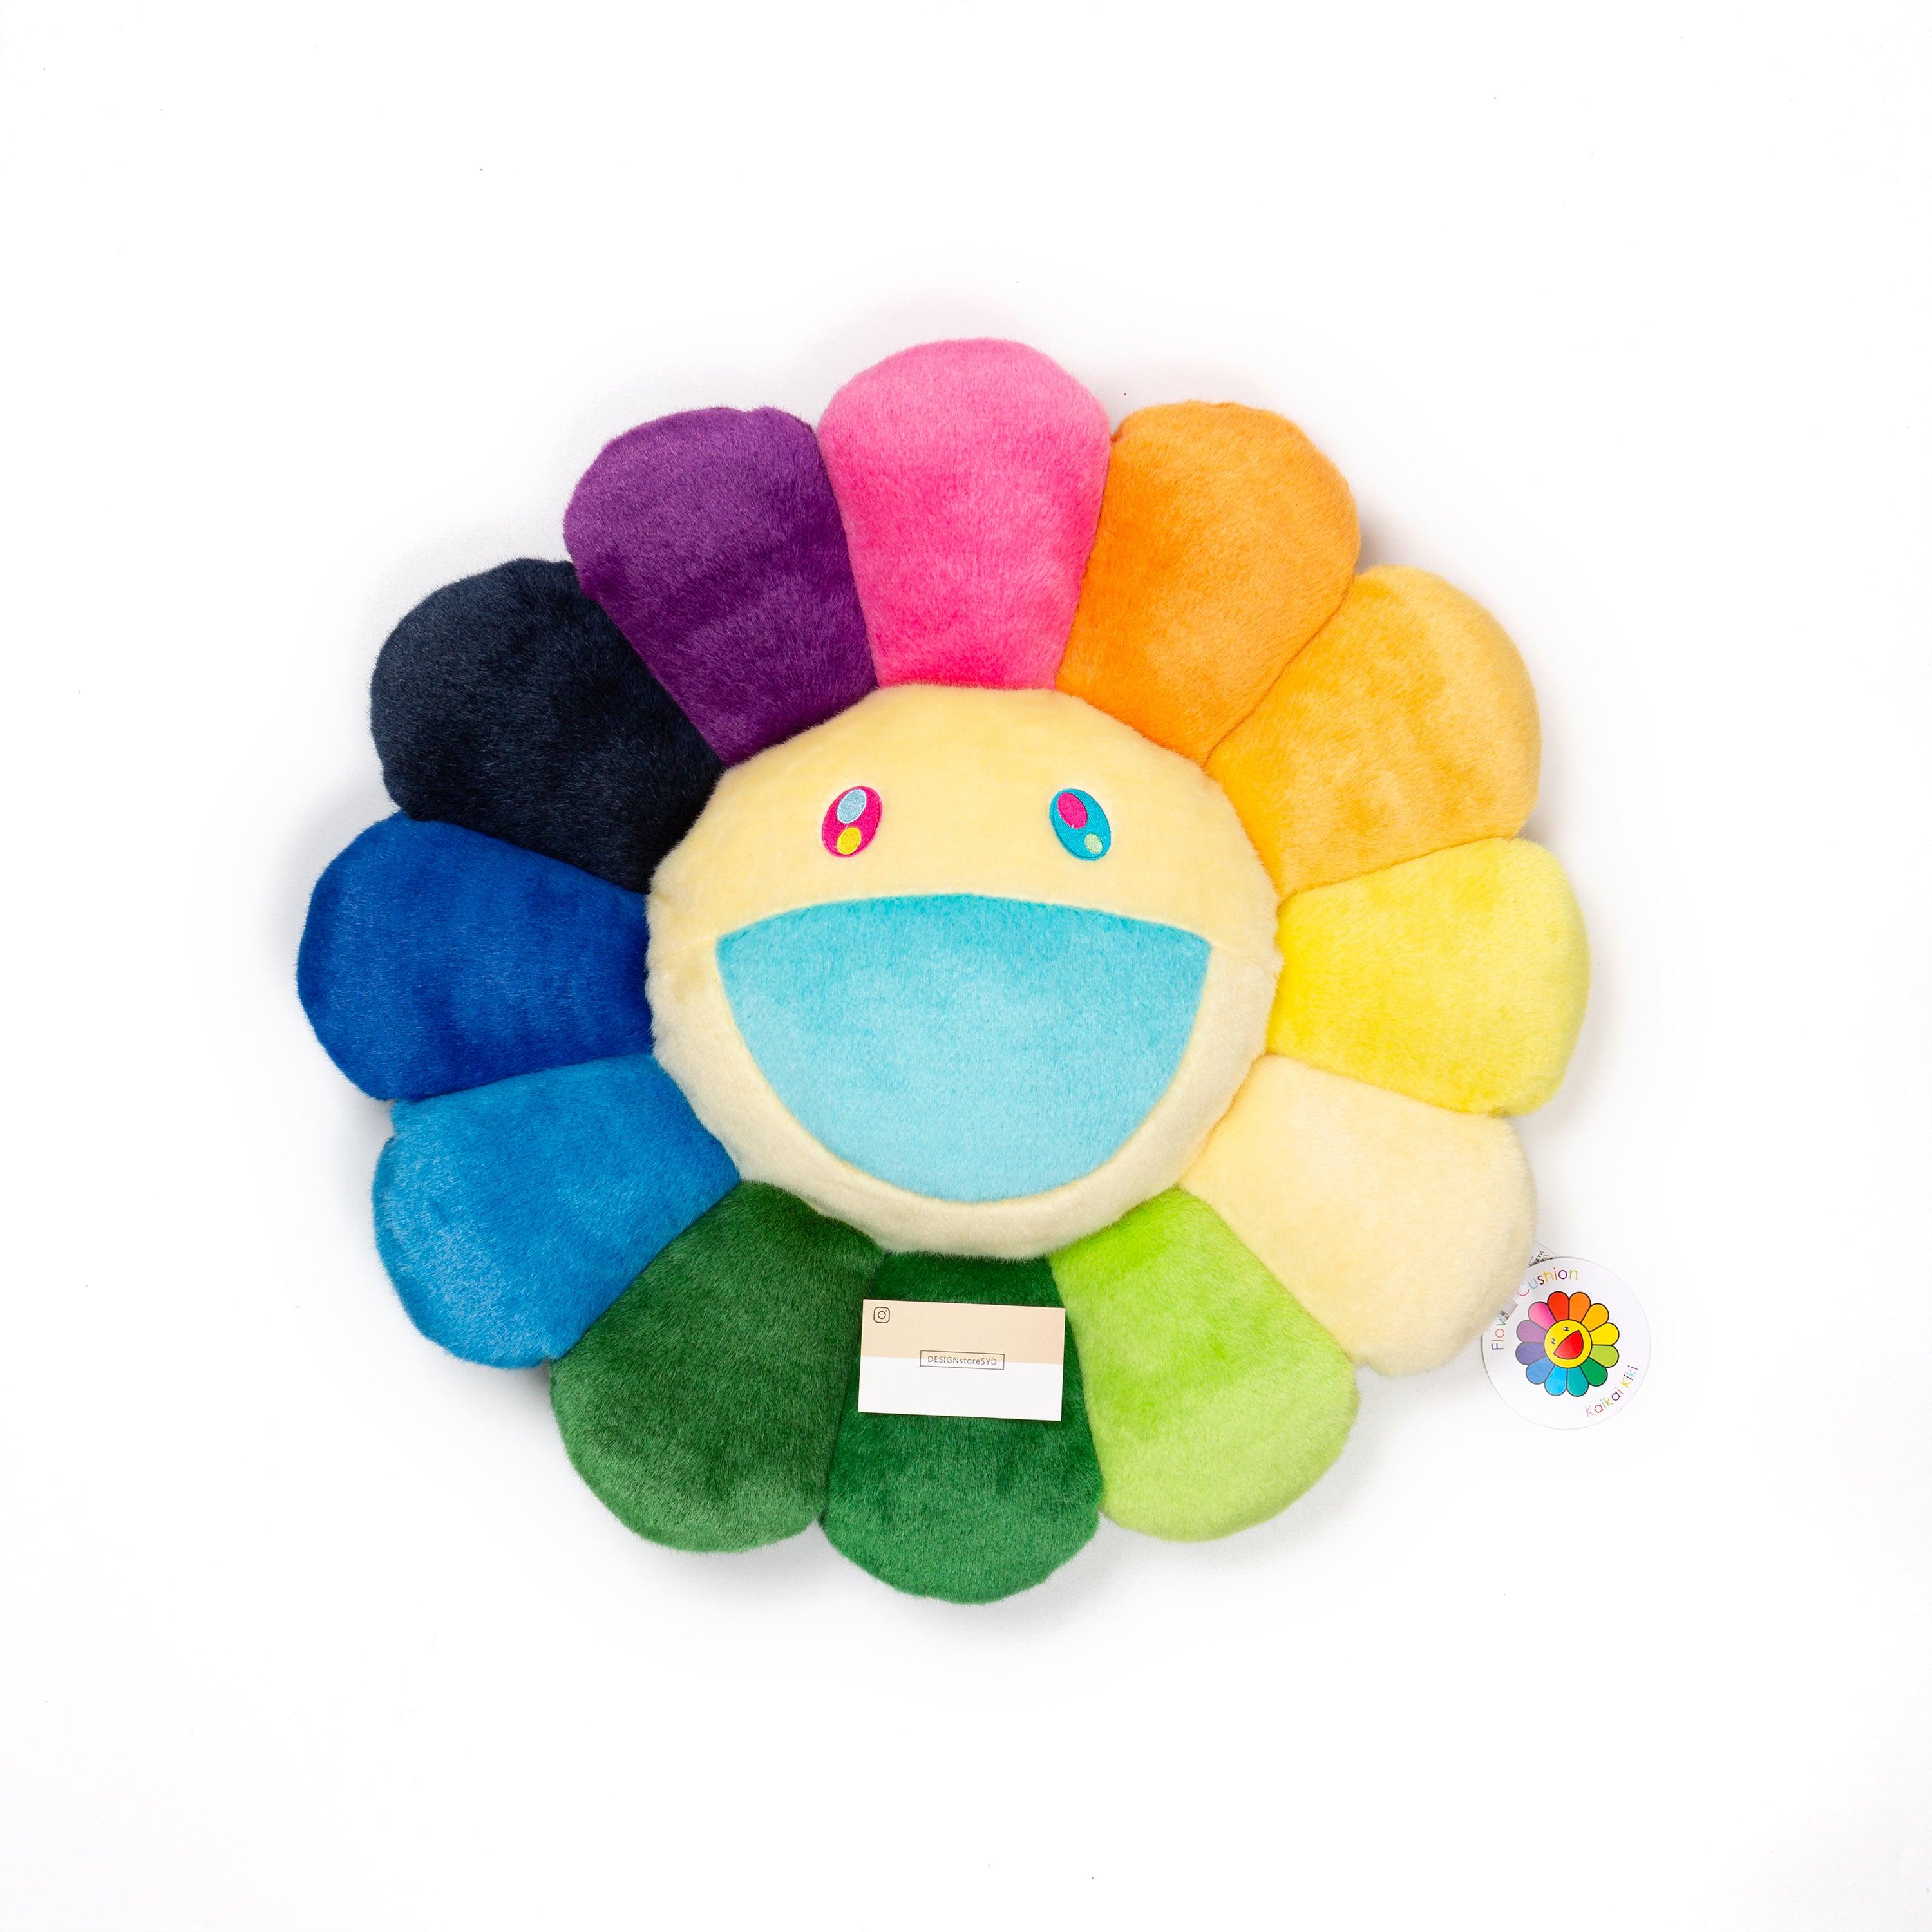 Takashi Murakami - Flower Cushion (Kintaro Ame Cut Candy Style Rainbow) -  60cm for Sale